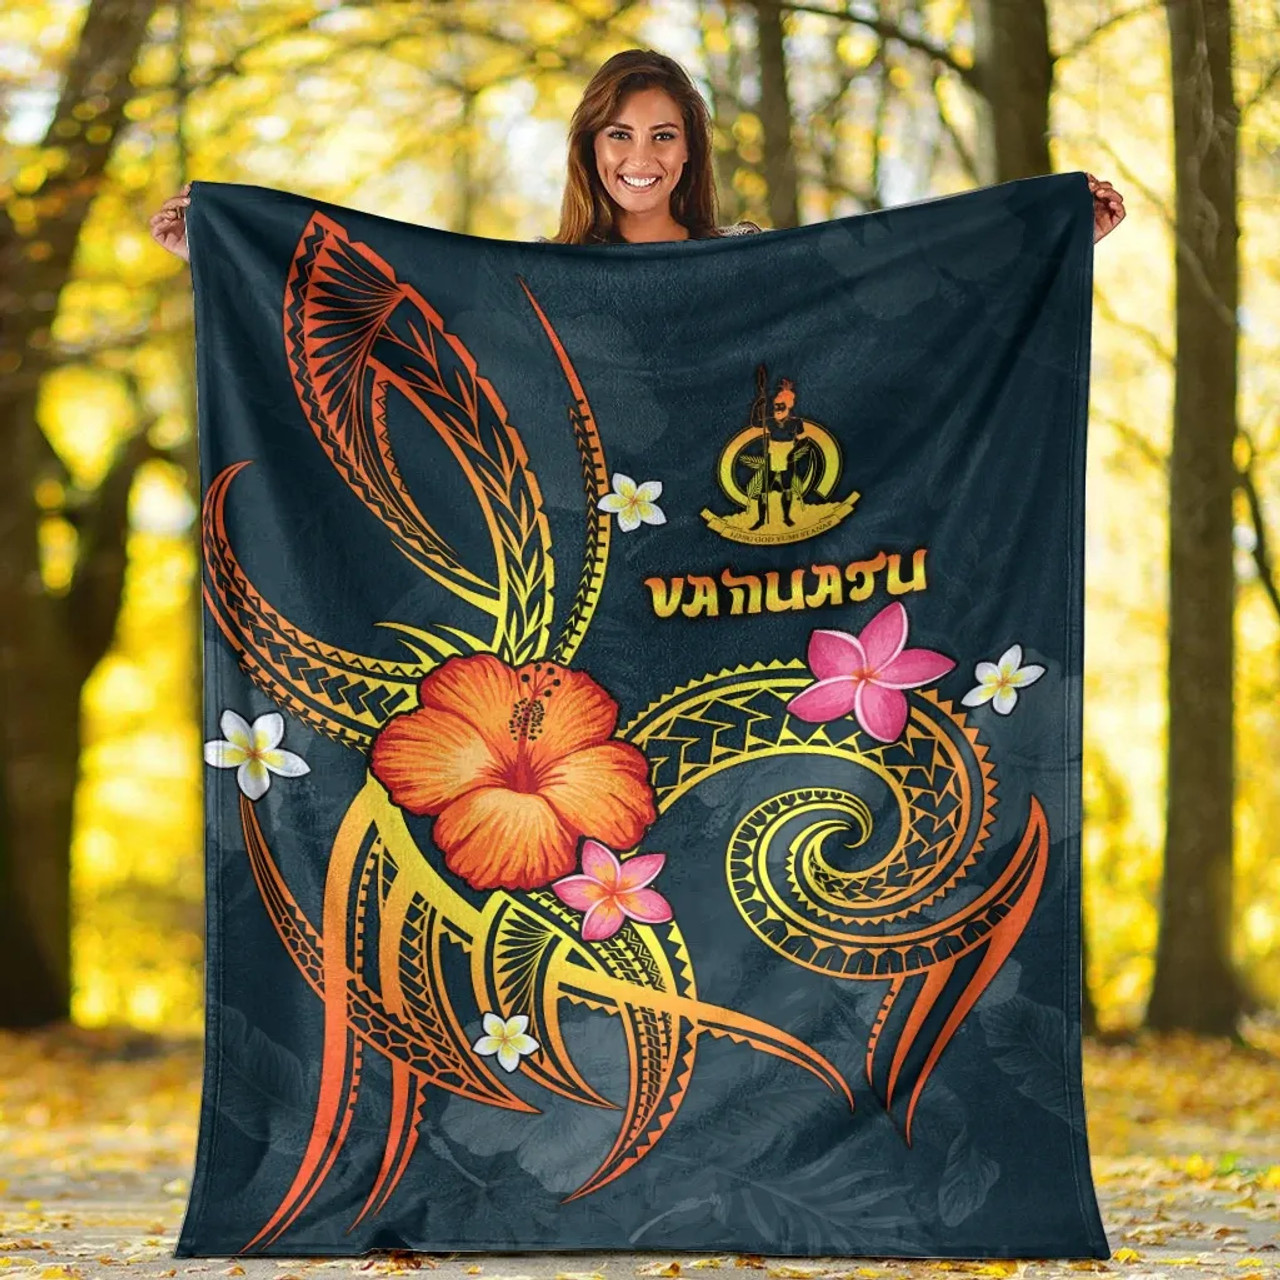 Vanuatu Polynesian Premium Blanket - Legend of Vanuatu (Blue) 4